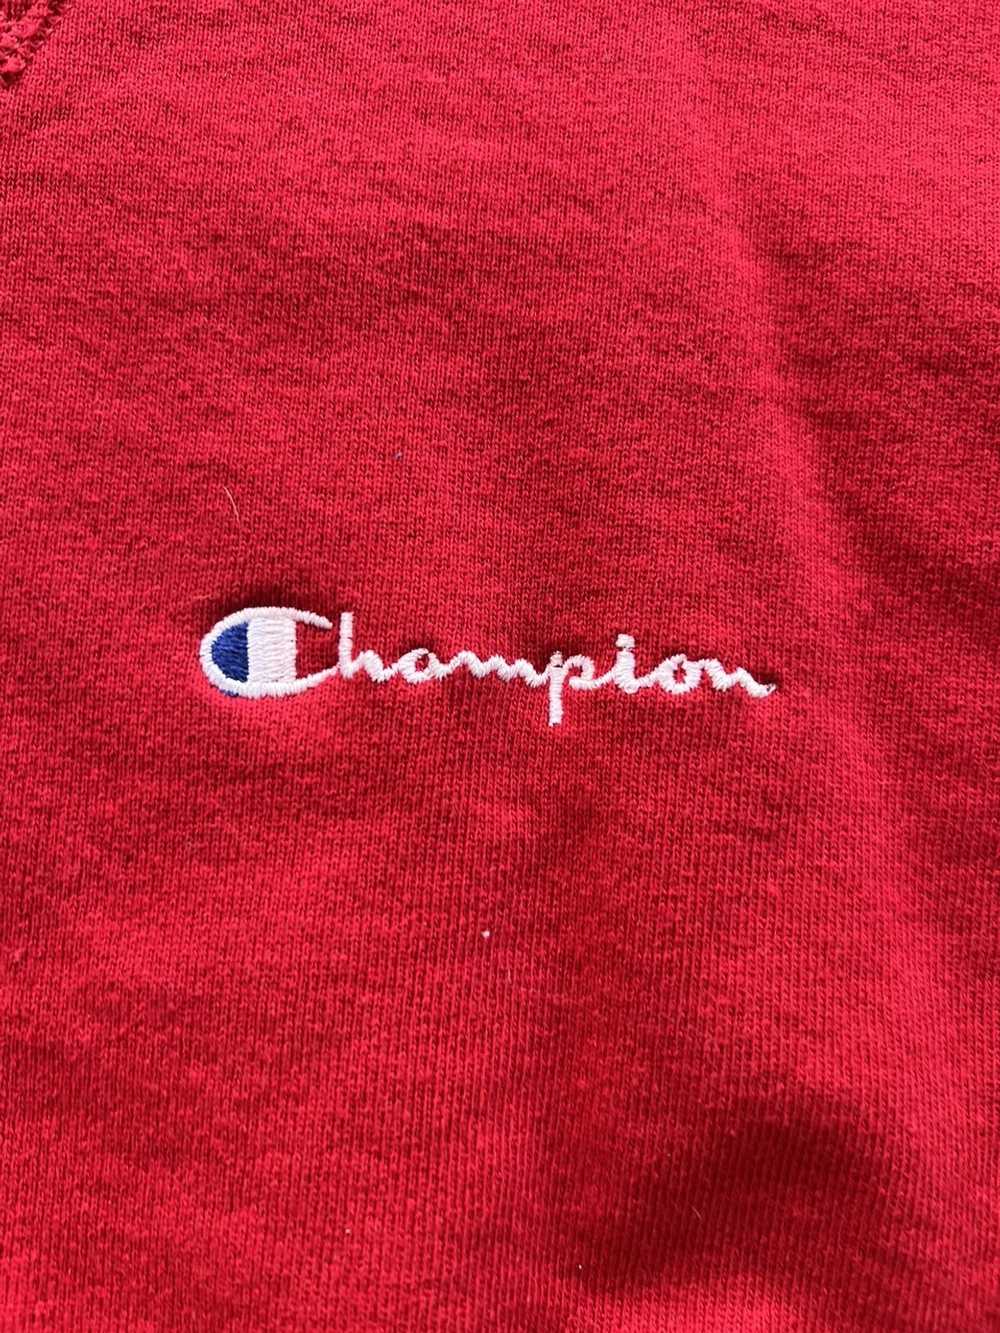 Champion × Vintage Vintage Champion sweatshirt cr… - image 2